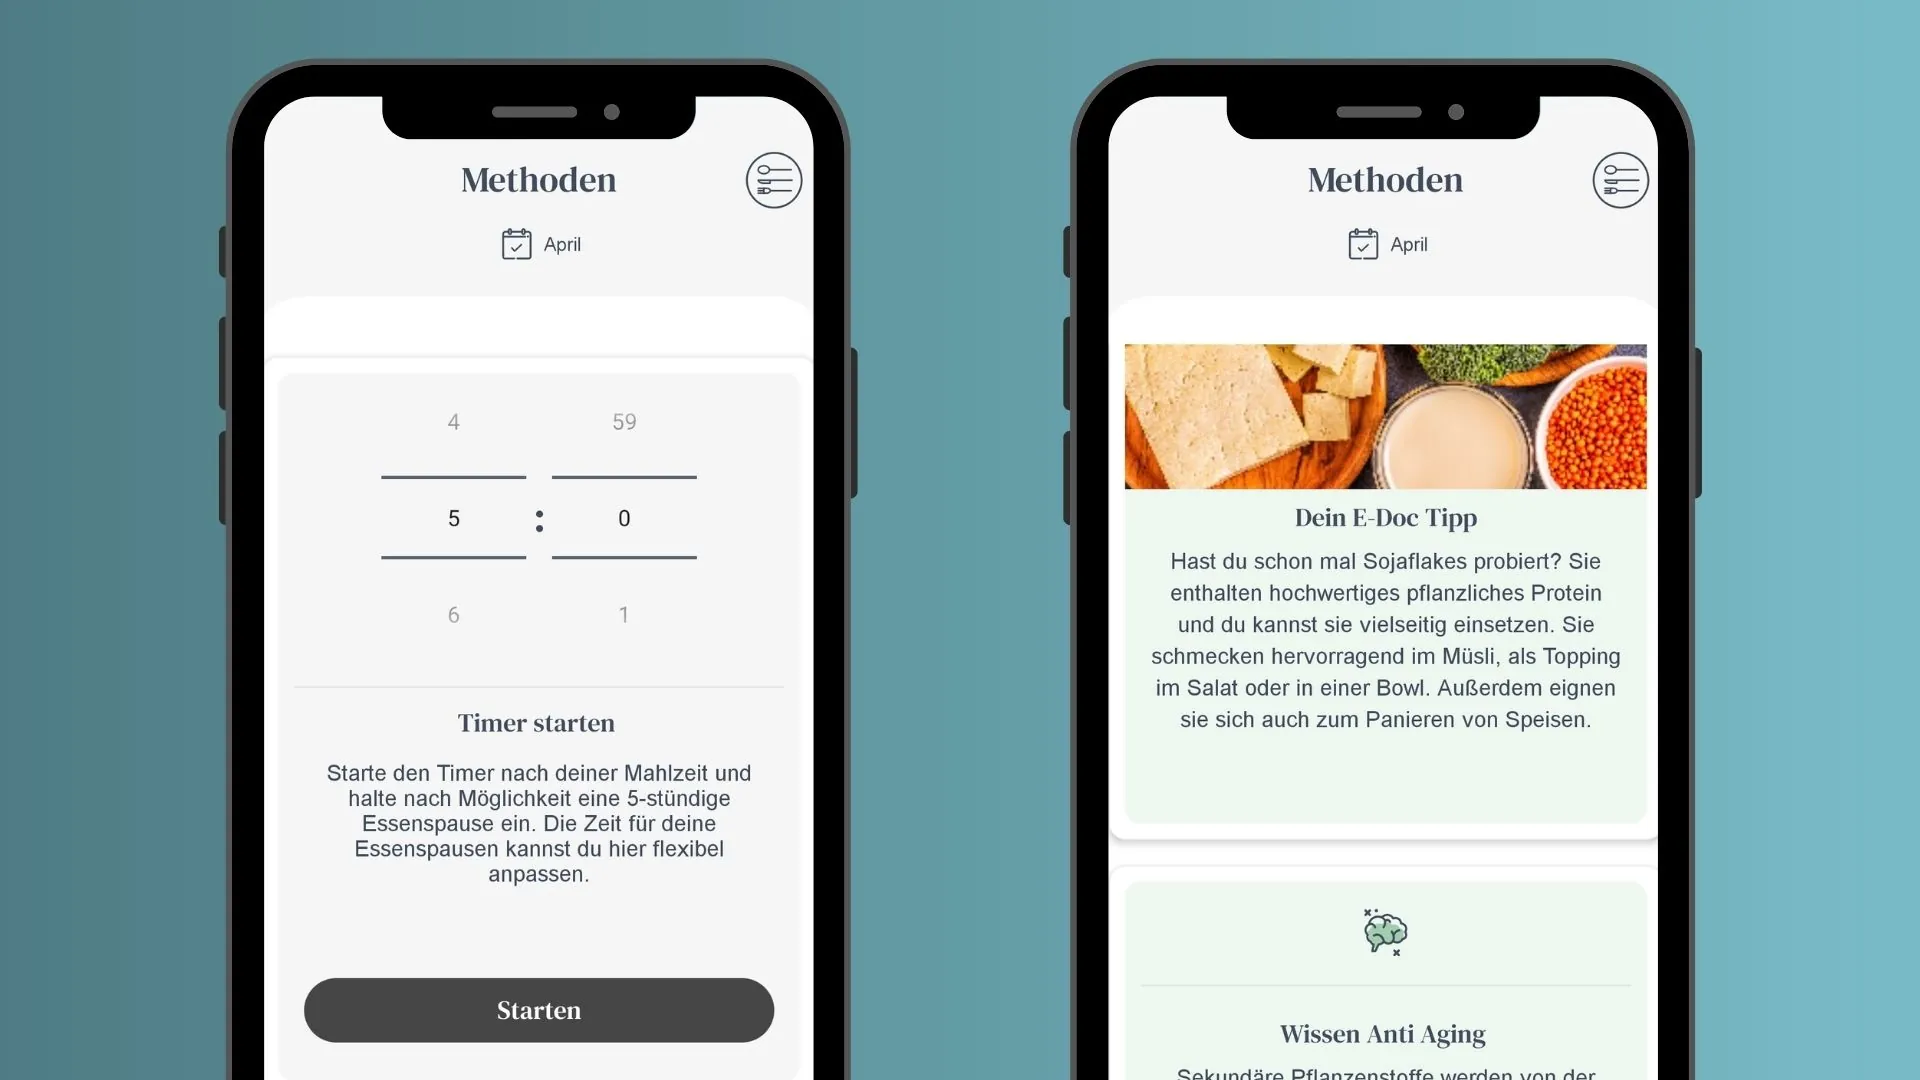 Hilft dabei, dein Essverhalten zu verändern: Zwei Screenshots, die den Timer für Intervallfasten und einen Ernährungstipp von Dr. Matthias Riedl vorstellen.